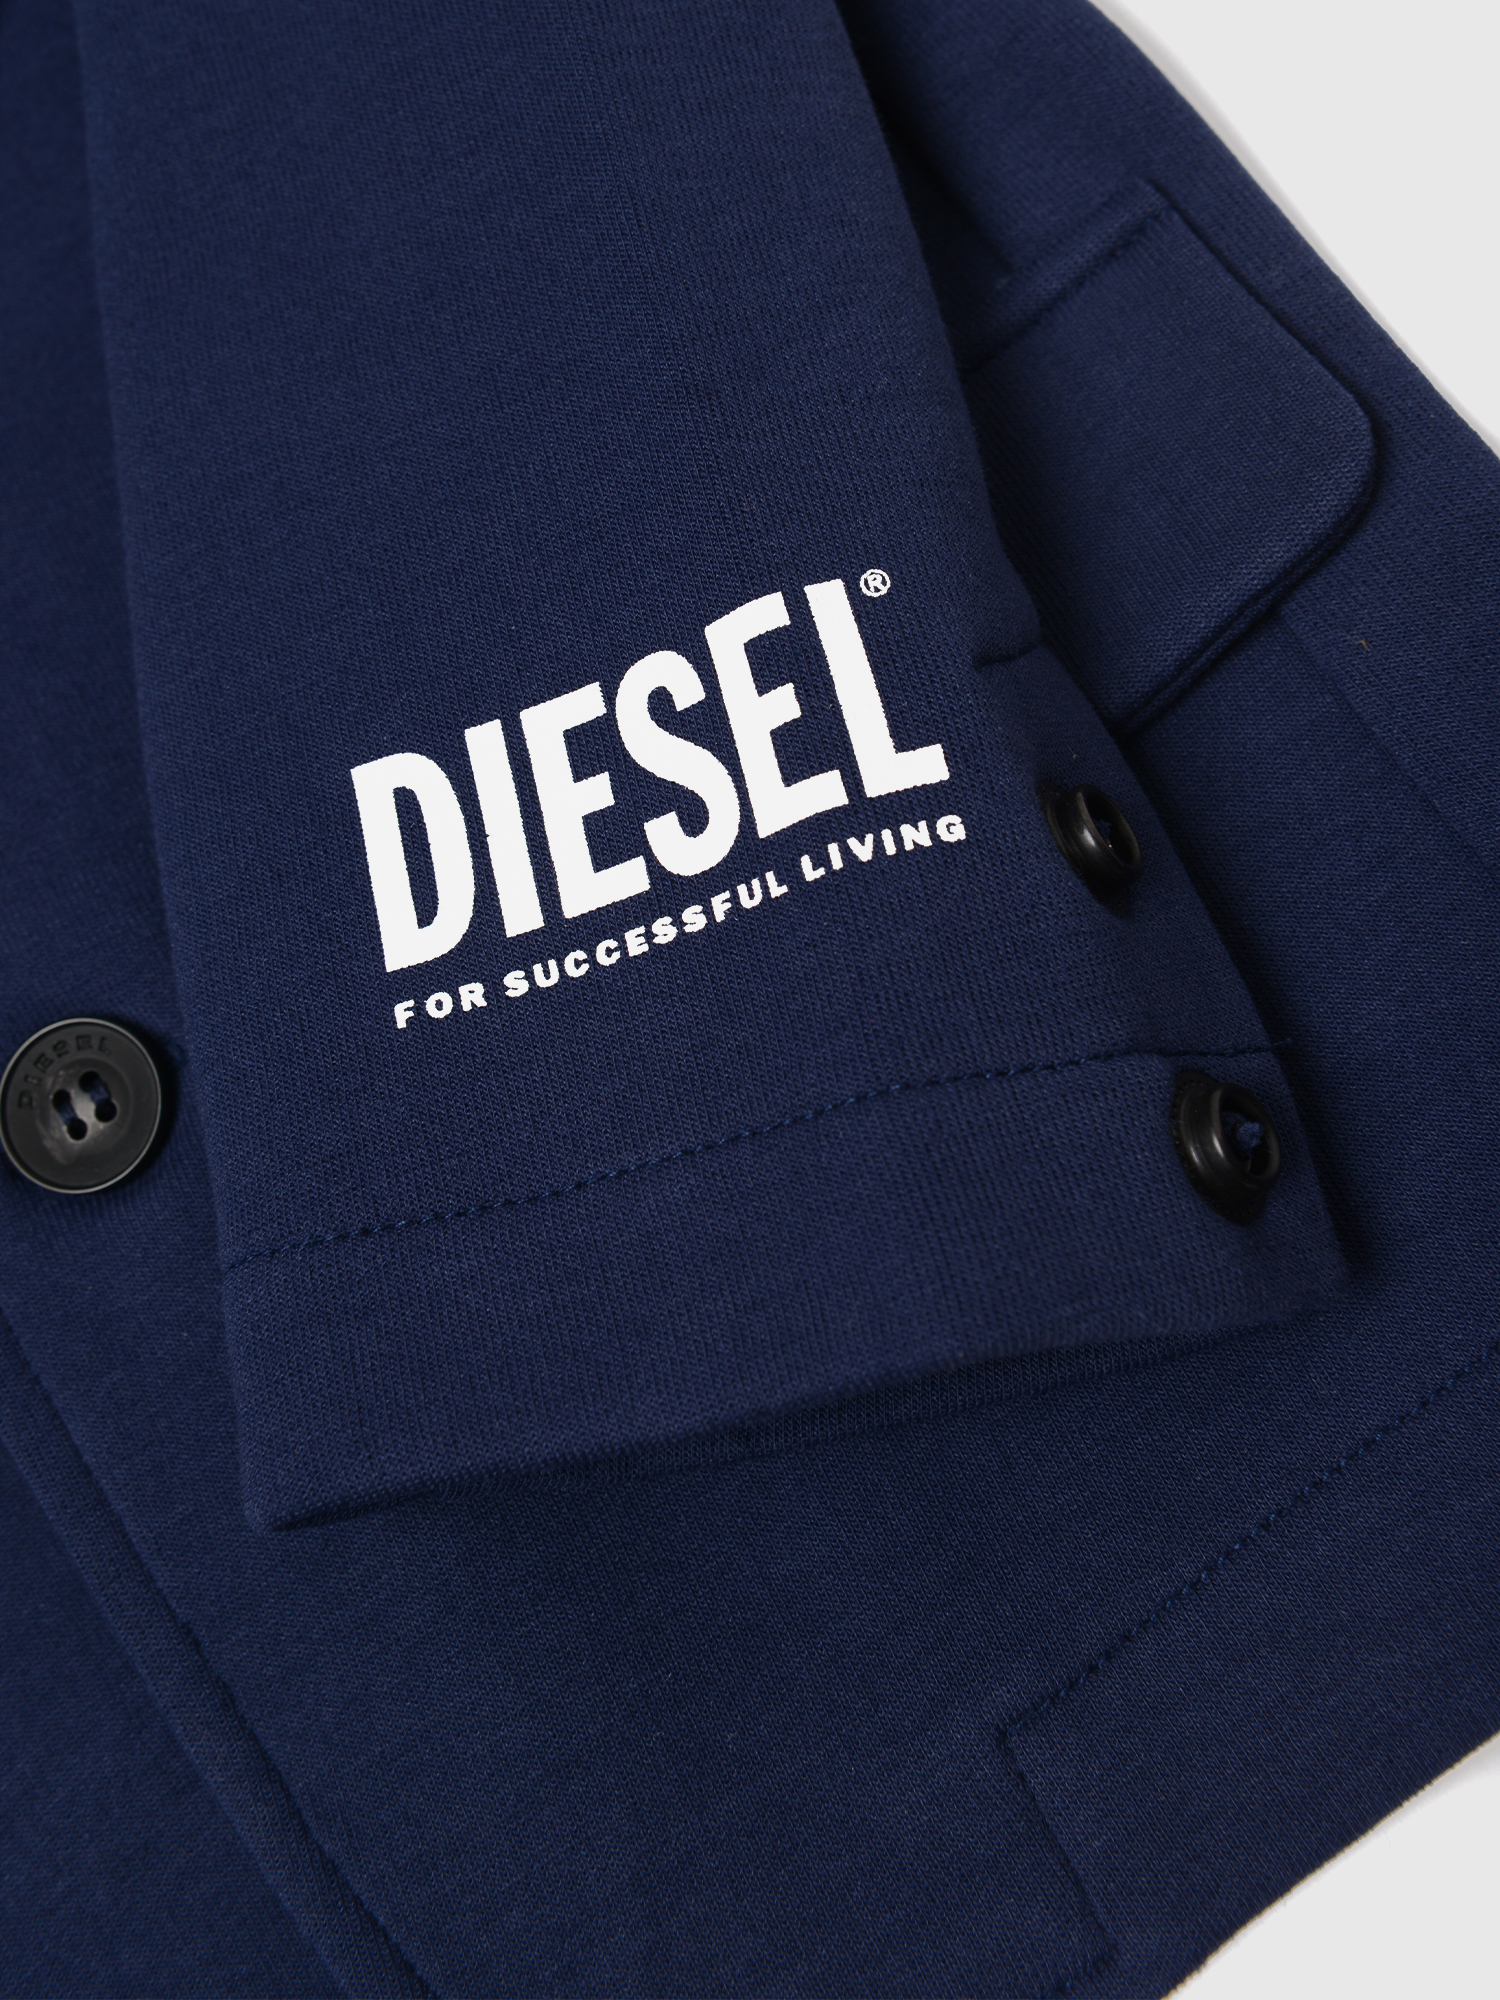 Diesel - SBOONB, Blue - Image 3